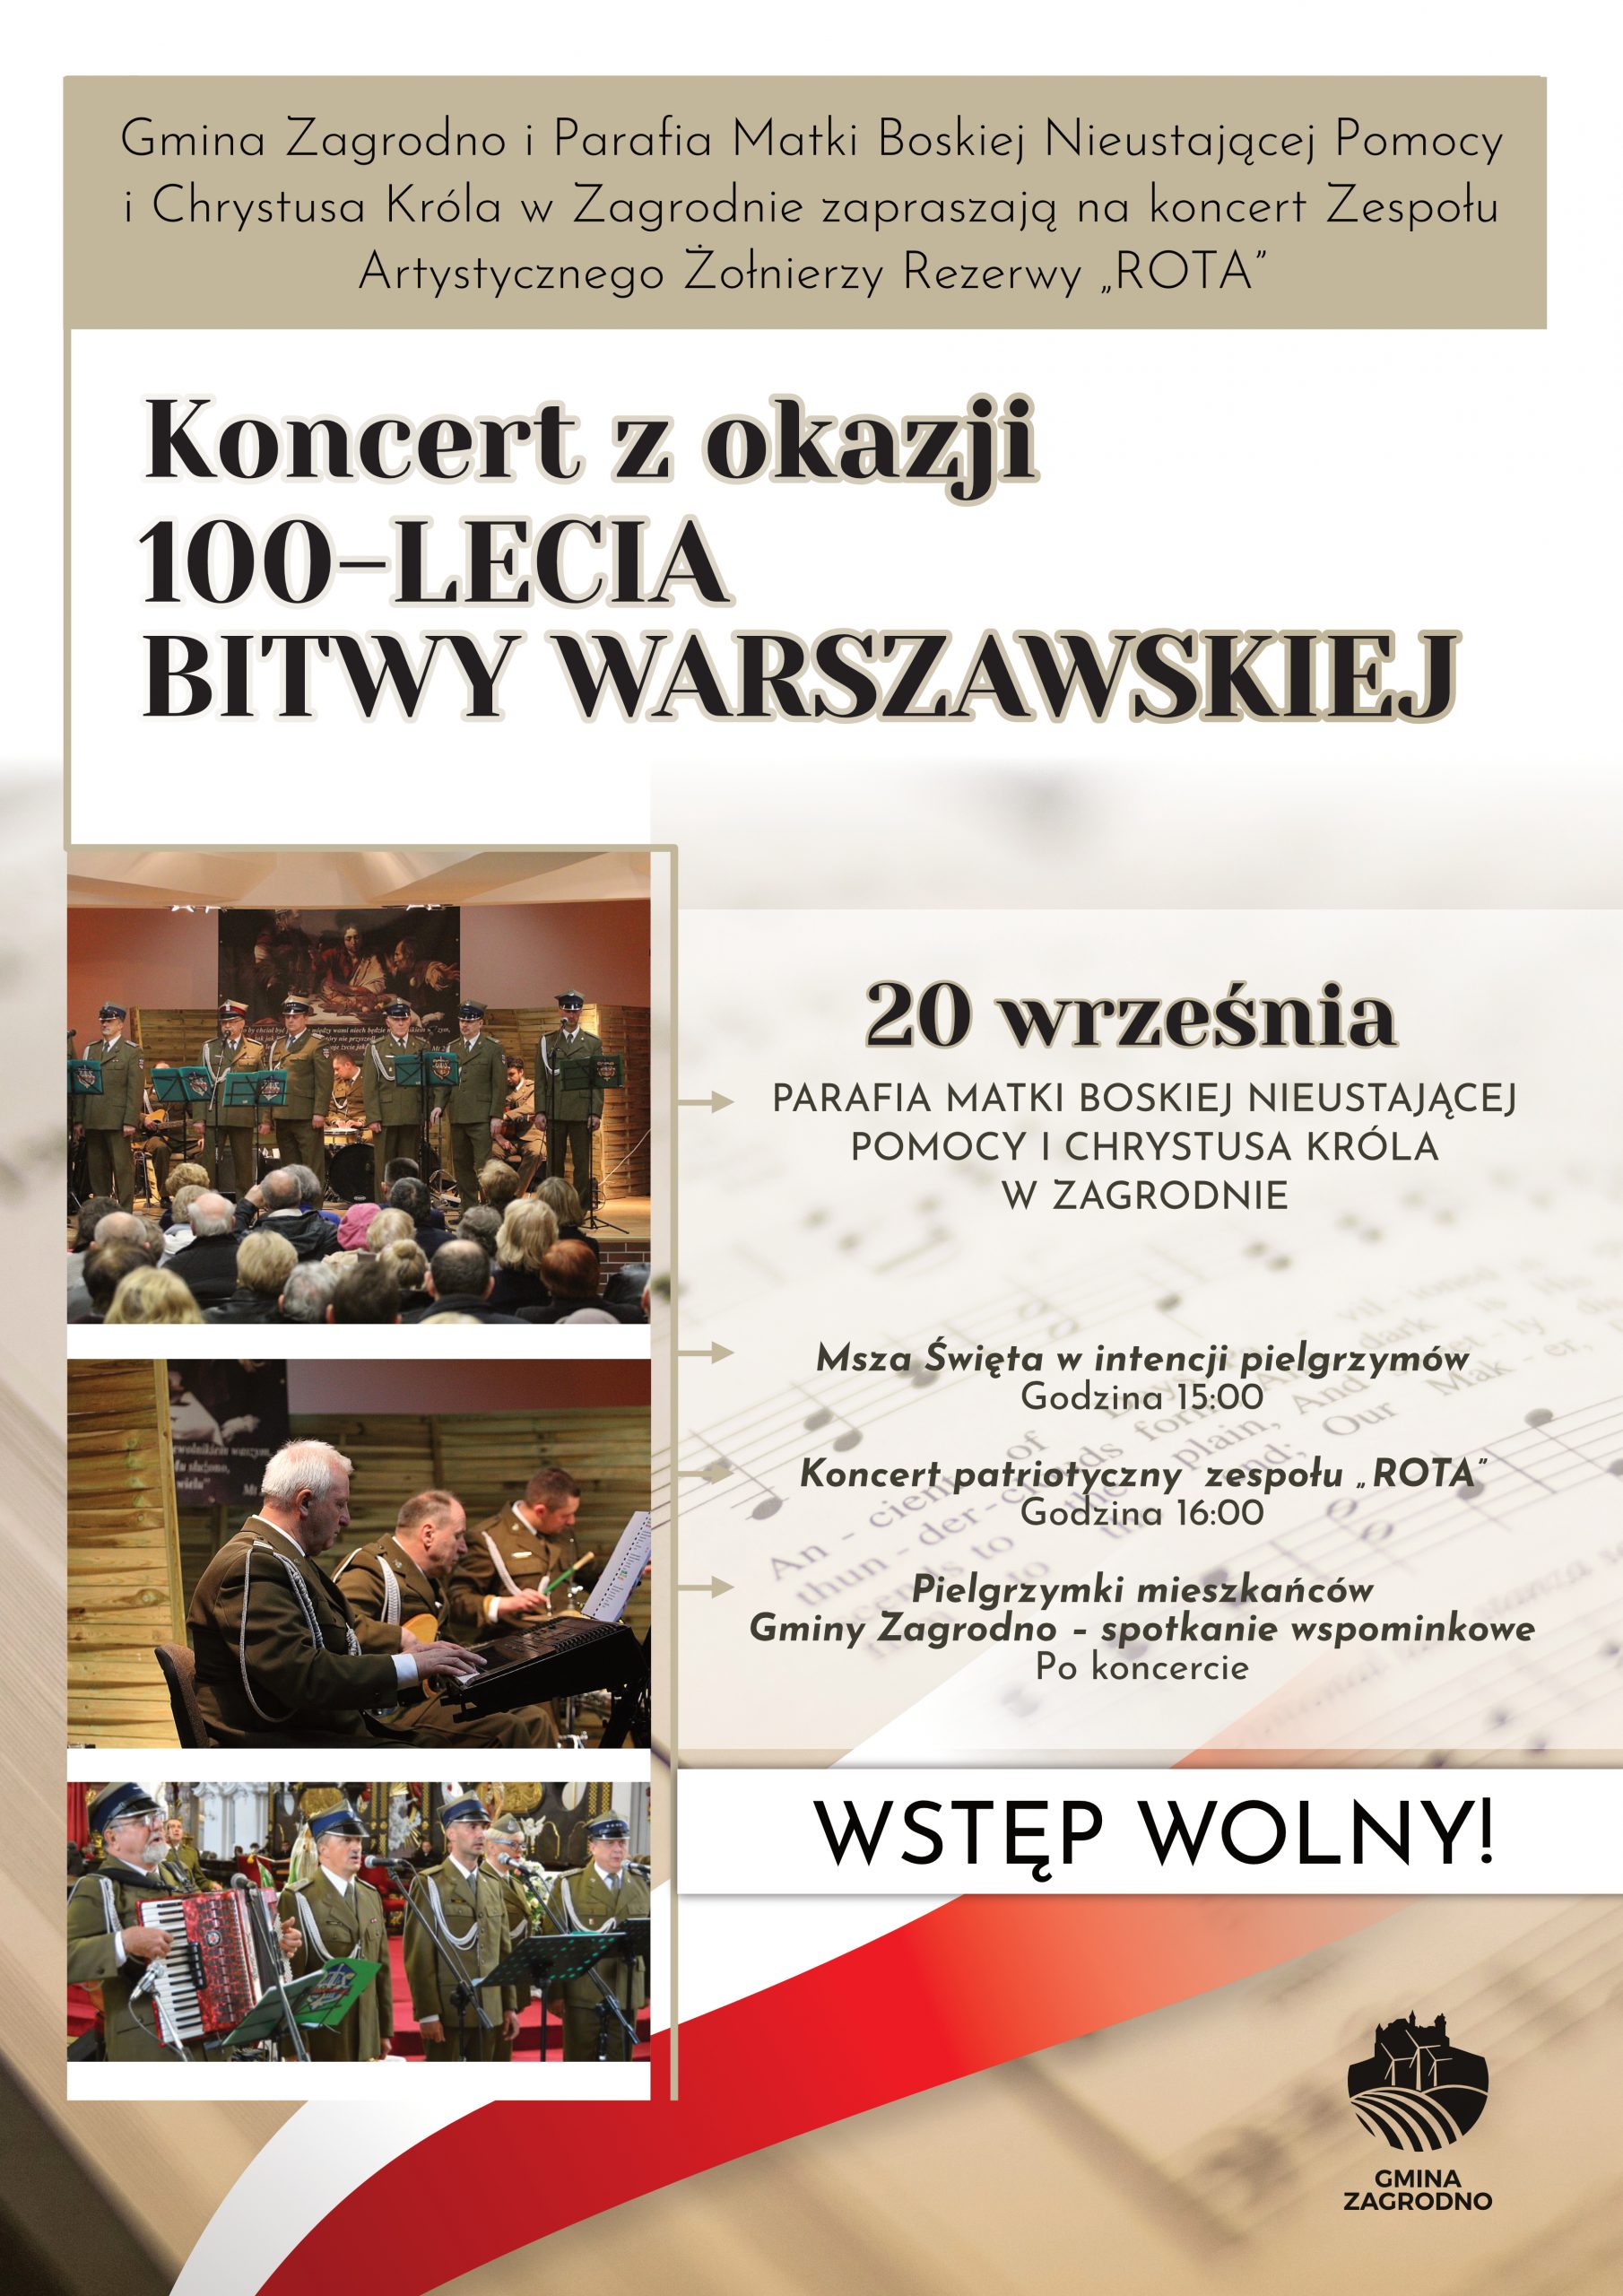 Plakat informujący o koncercie z okazji  stulecia bitwy warszawskiej